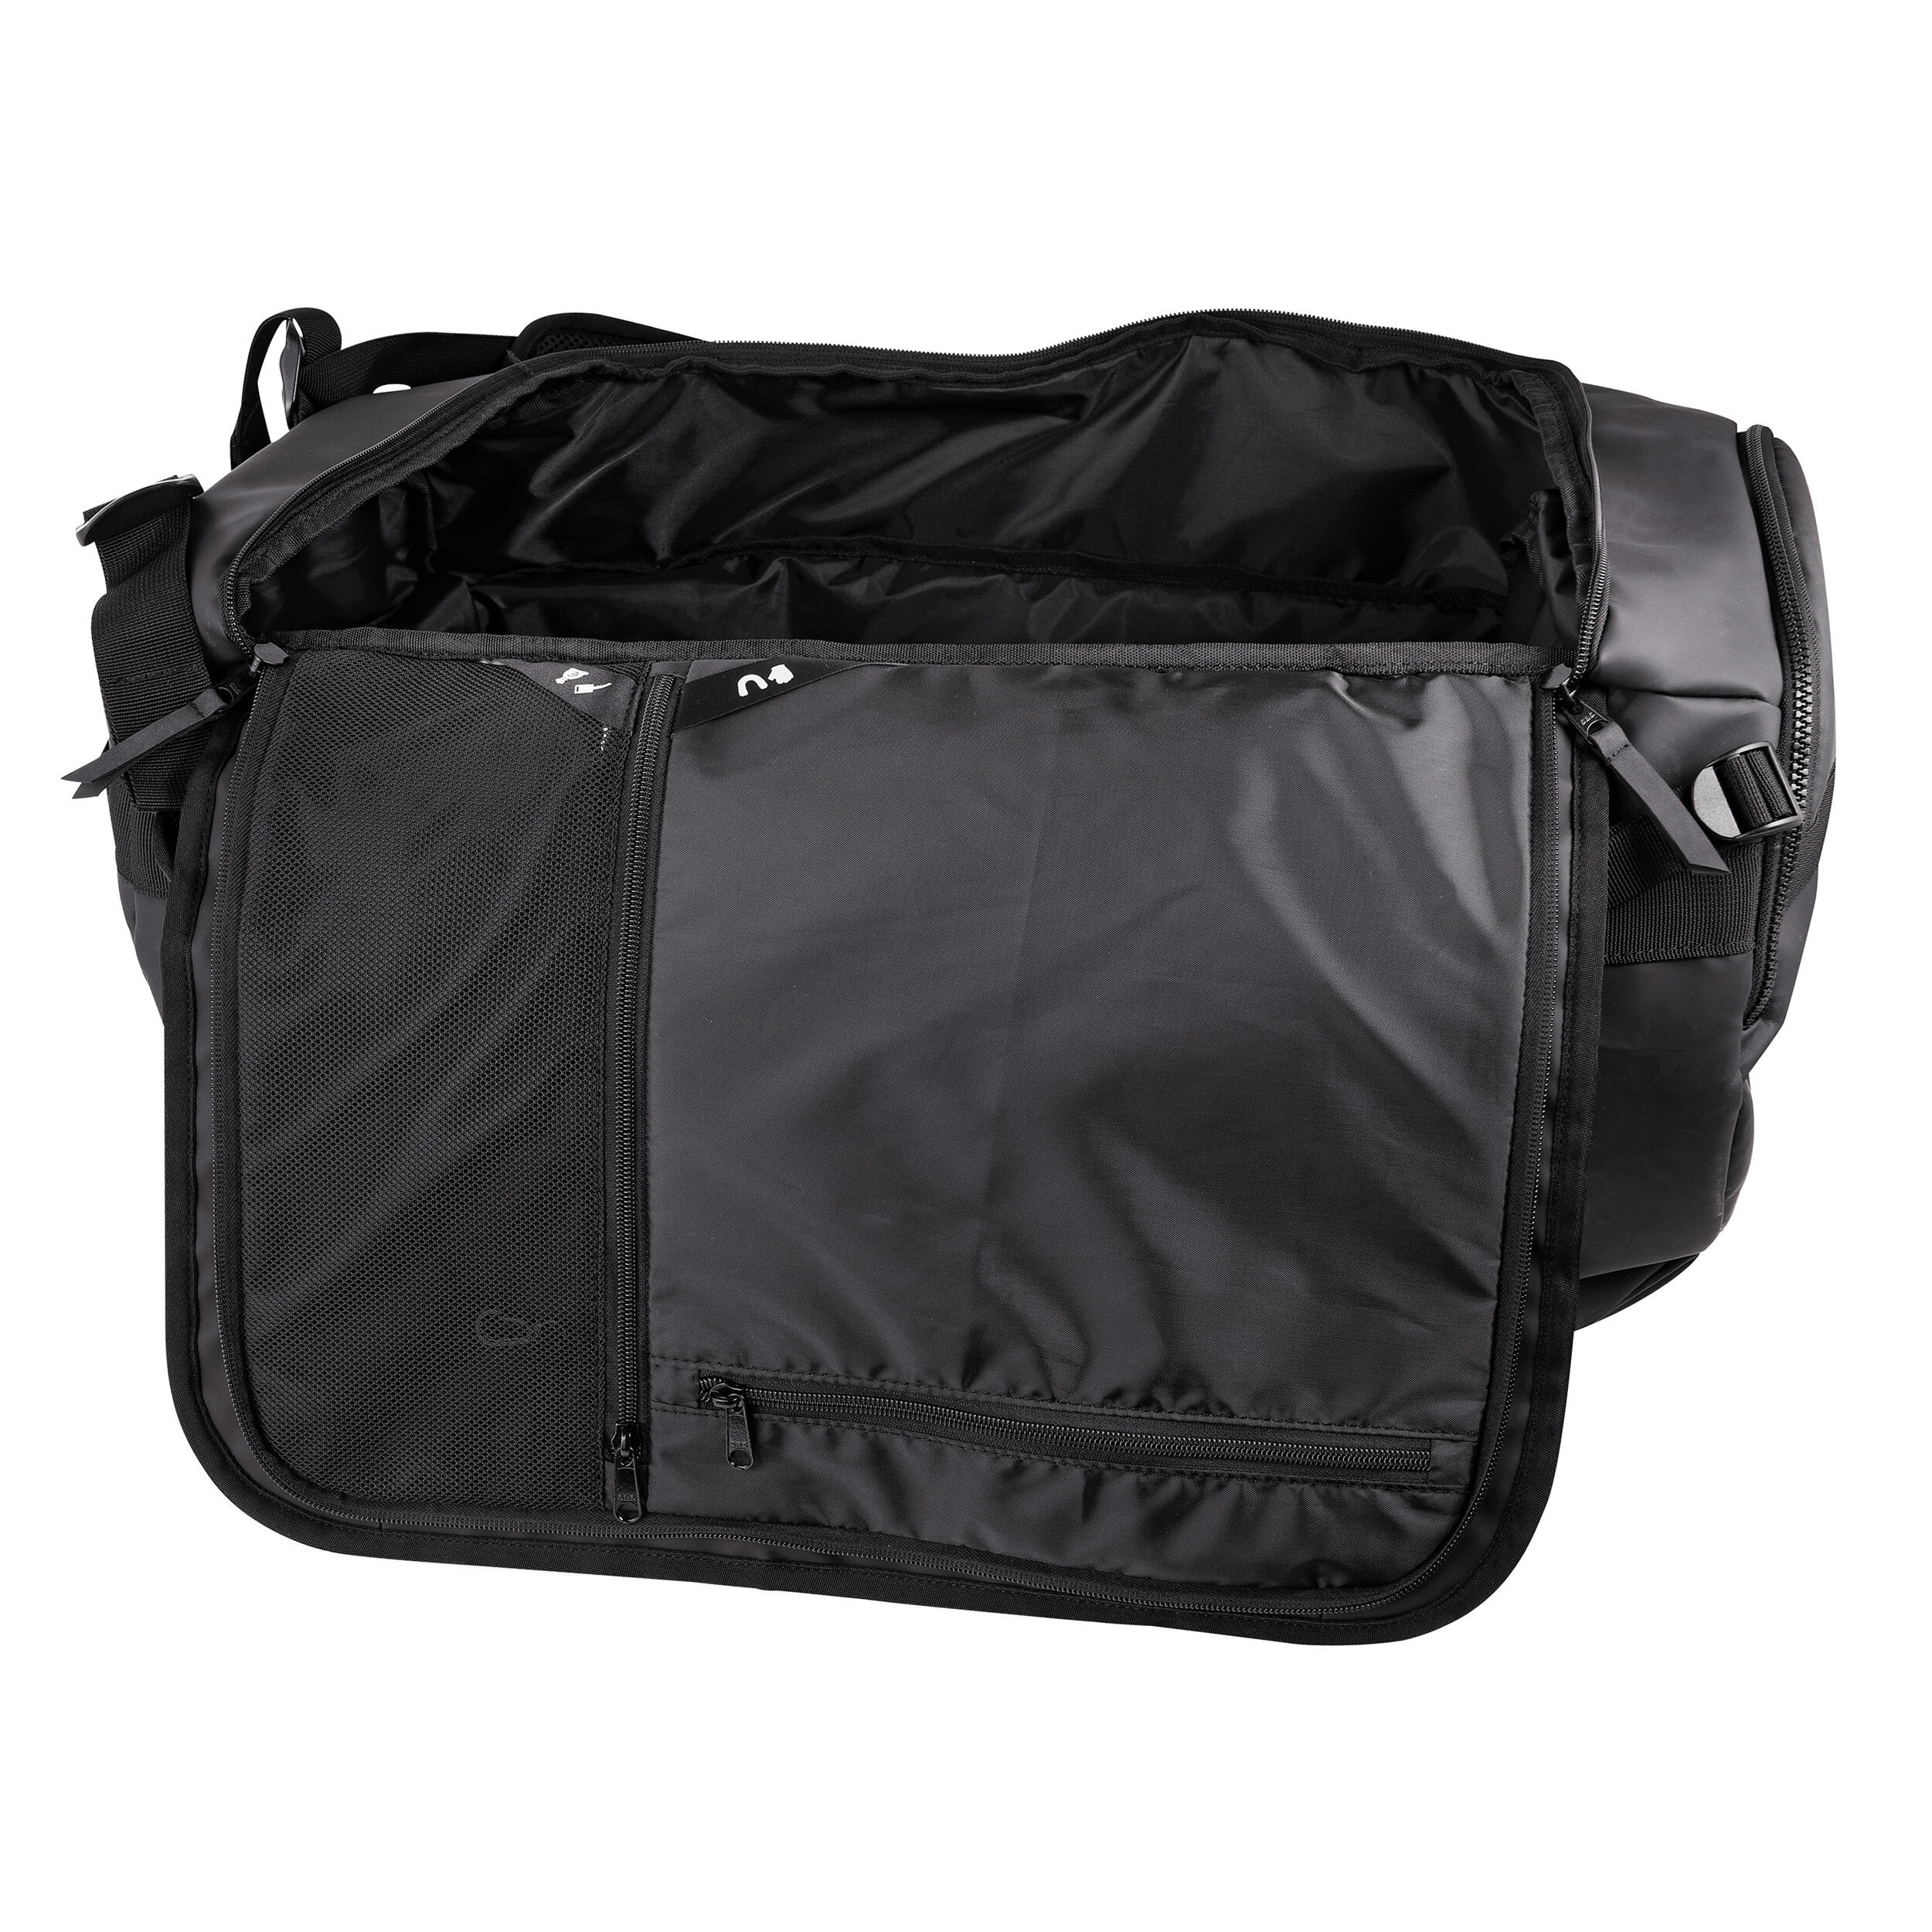 Field Hockey Duffel Bag FH900 - Black 18/25